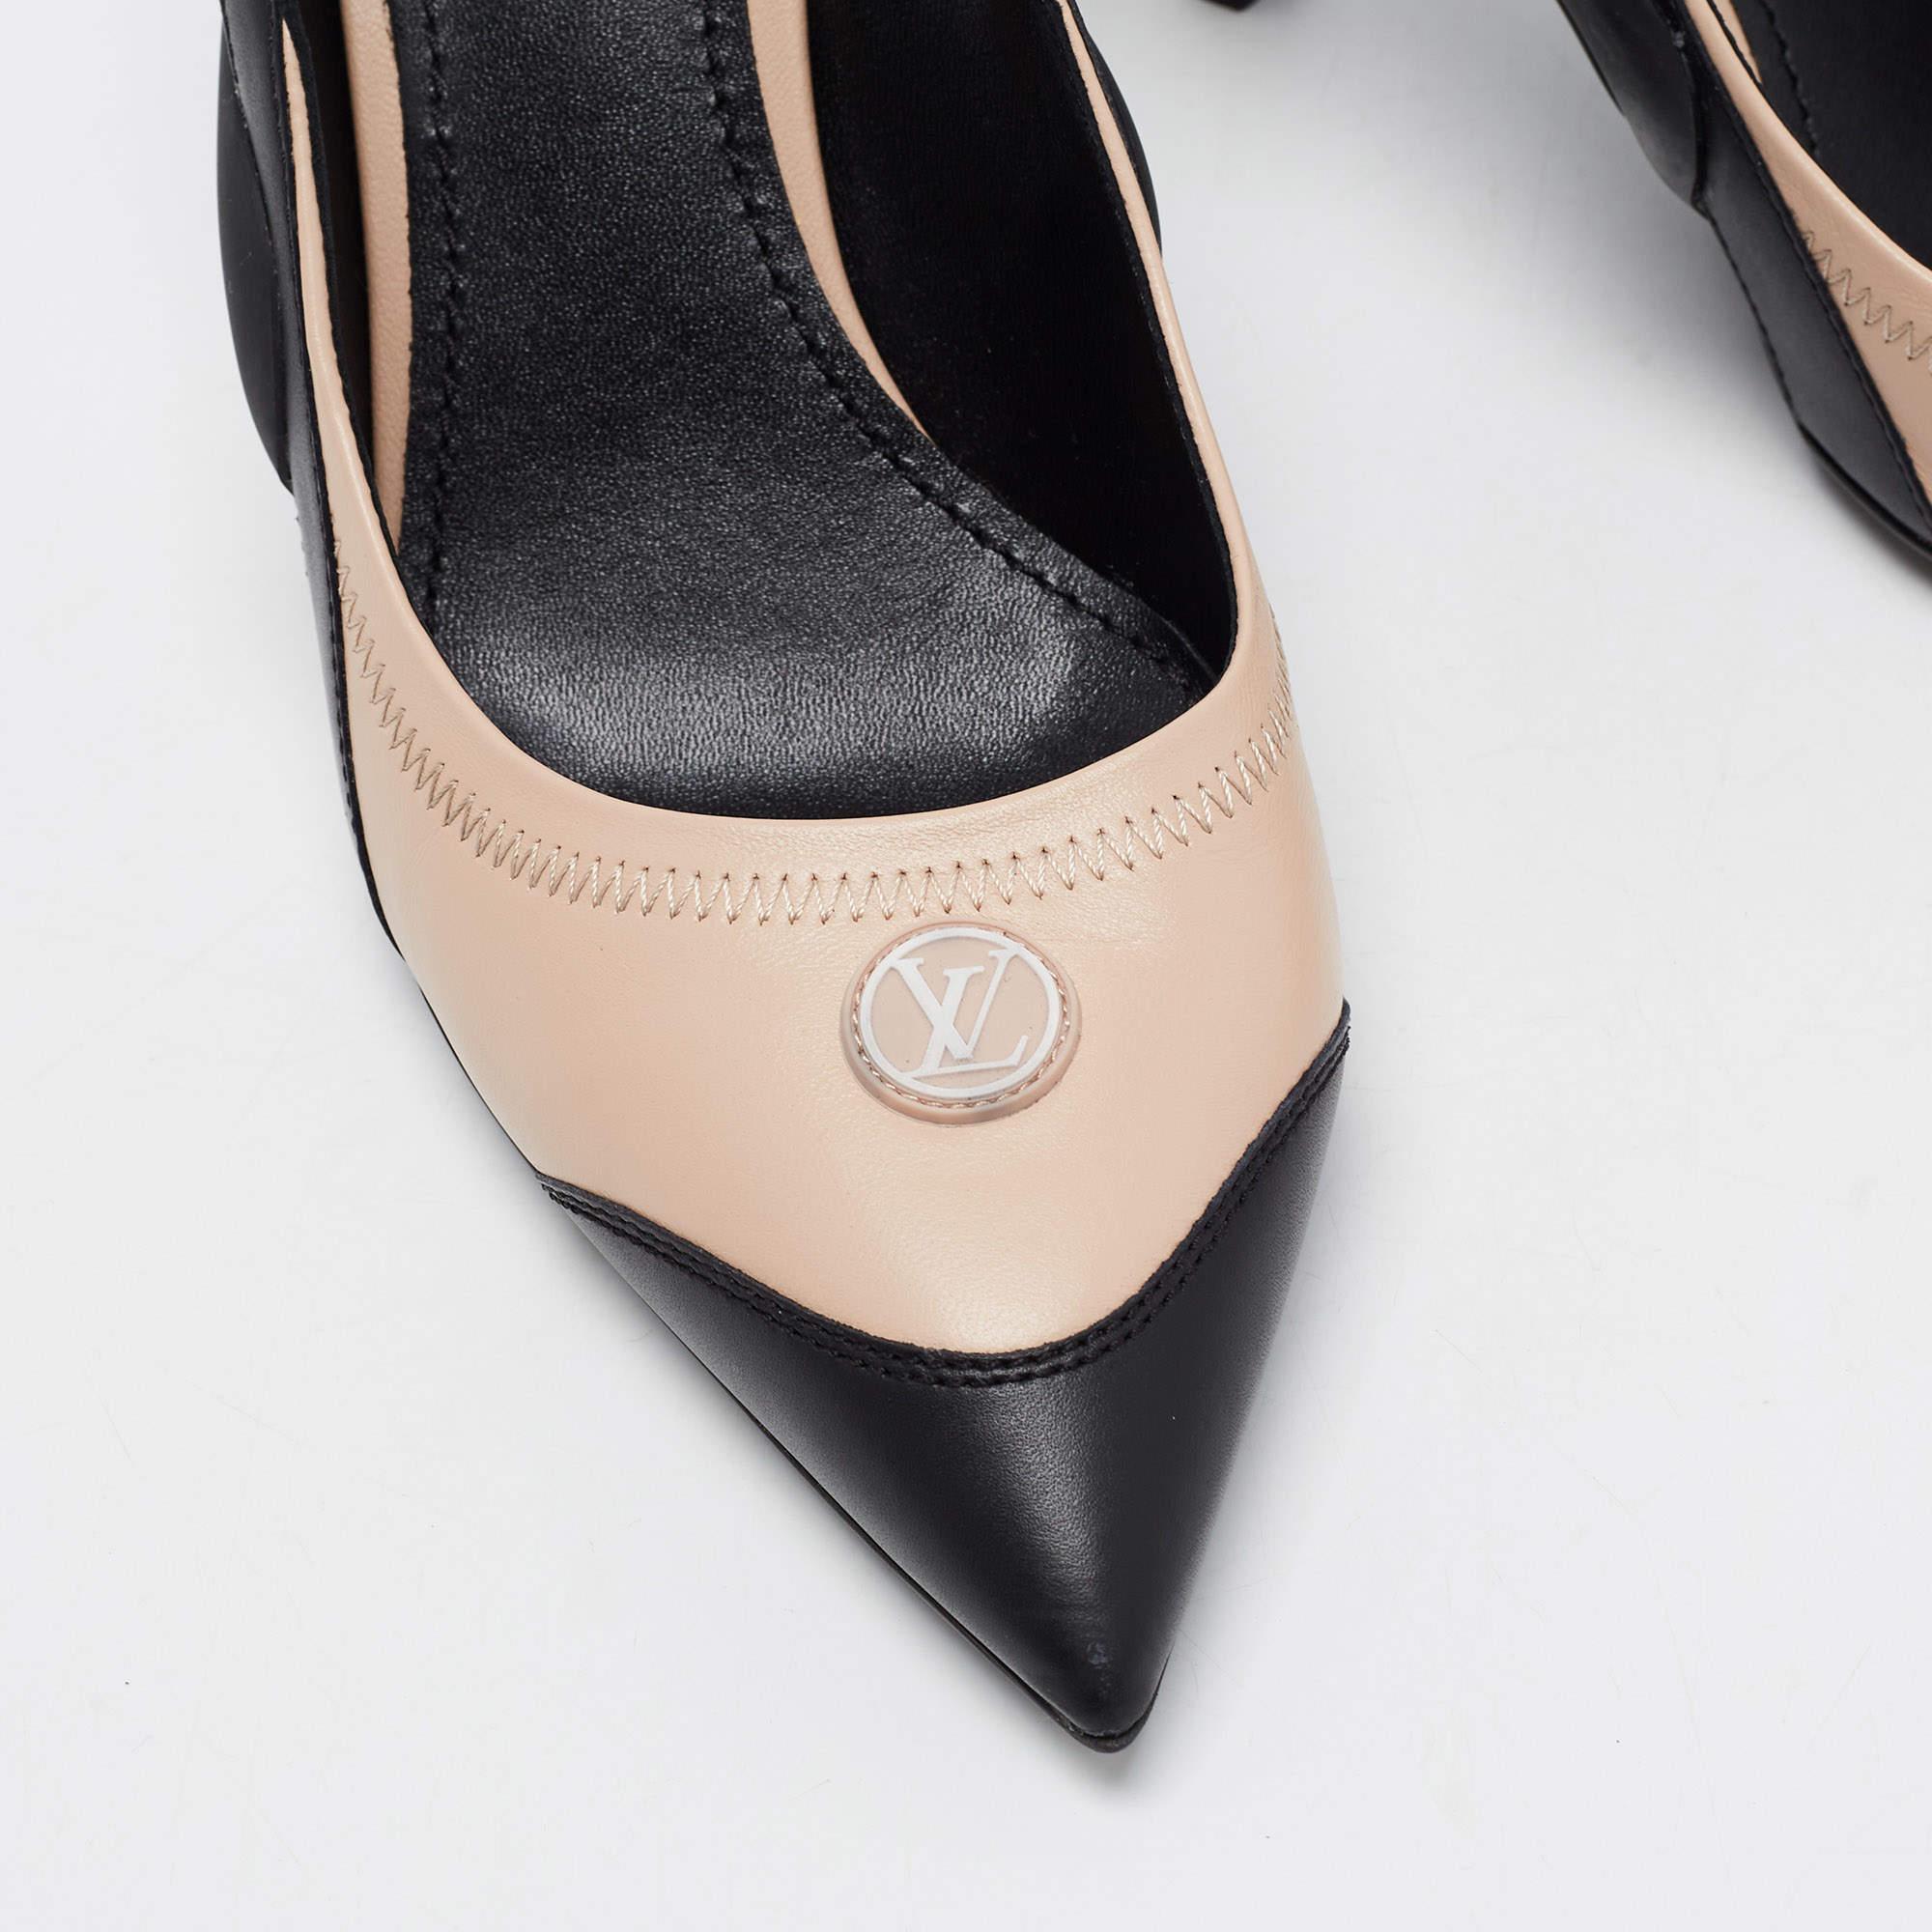 Women's Louis Vuitton Black/Beige Leather and Mesh Archlight Pumps Size 40